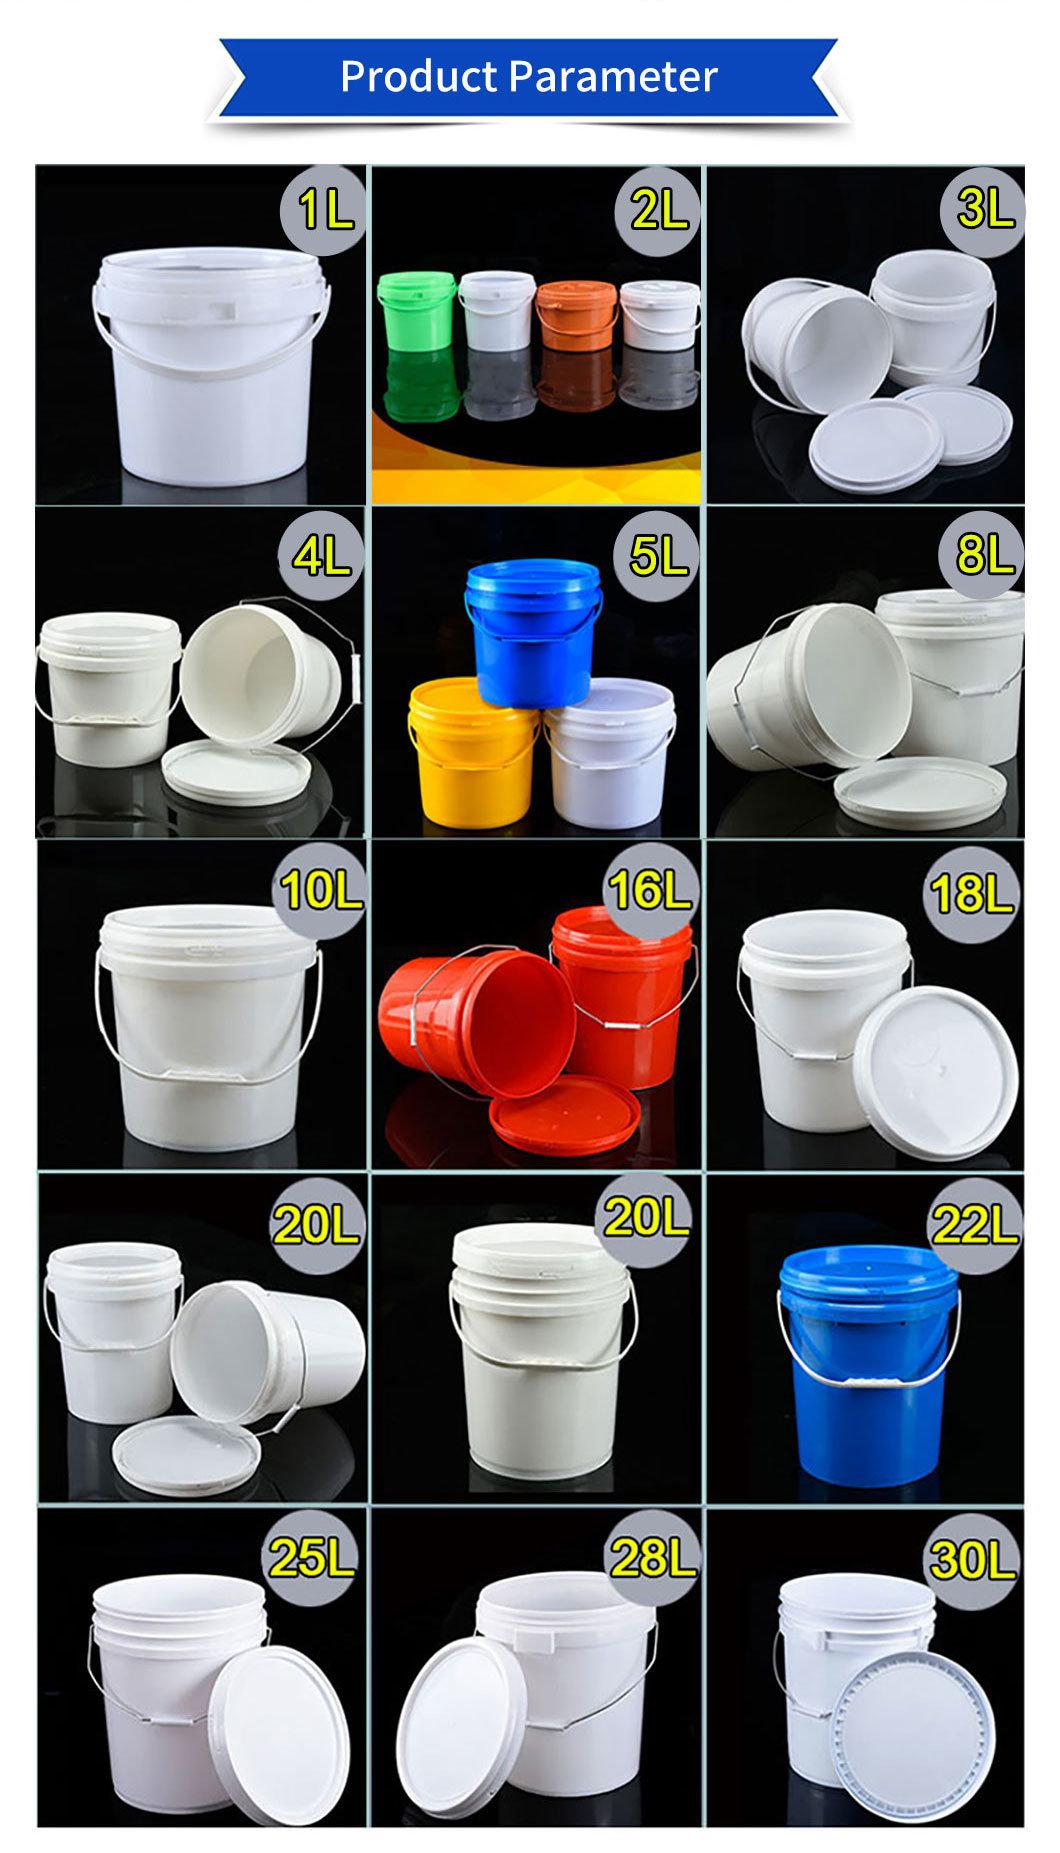 Factory Price Plastic Buckets Wholesale Plastic Pails 2L 3L 4L 6L 8L 10L